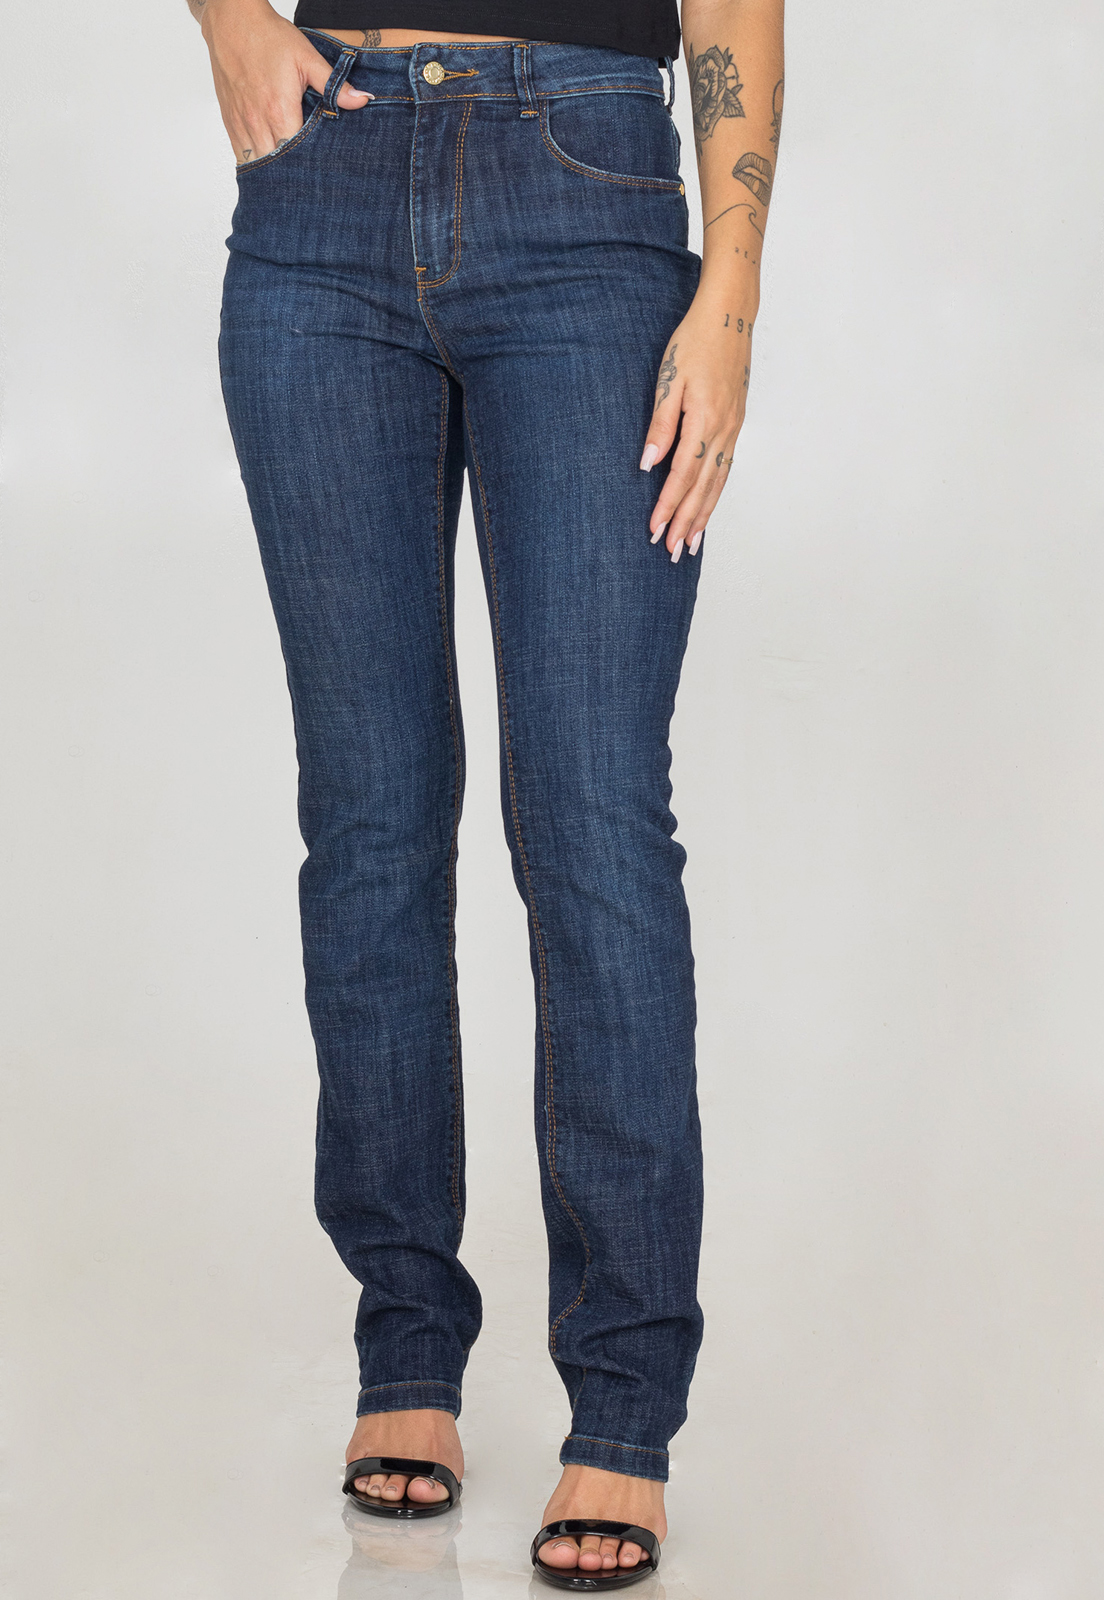 Calça Jeans Reta Feminina Cós Alto Básica Casual Premium